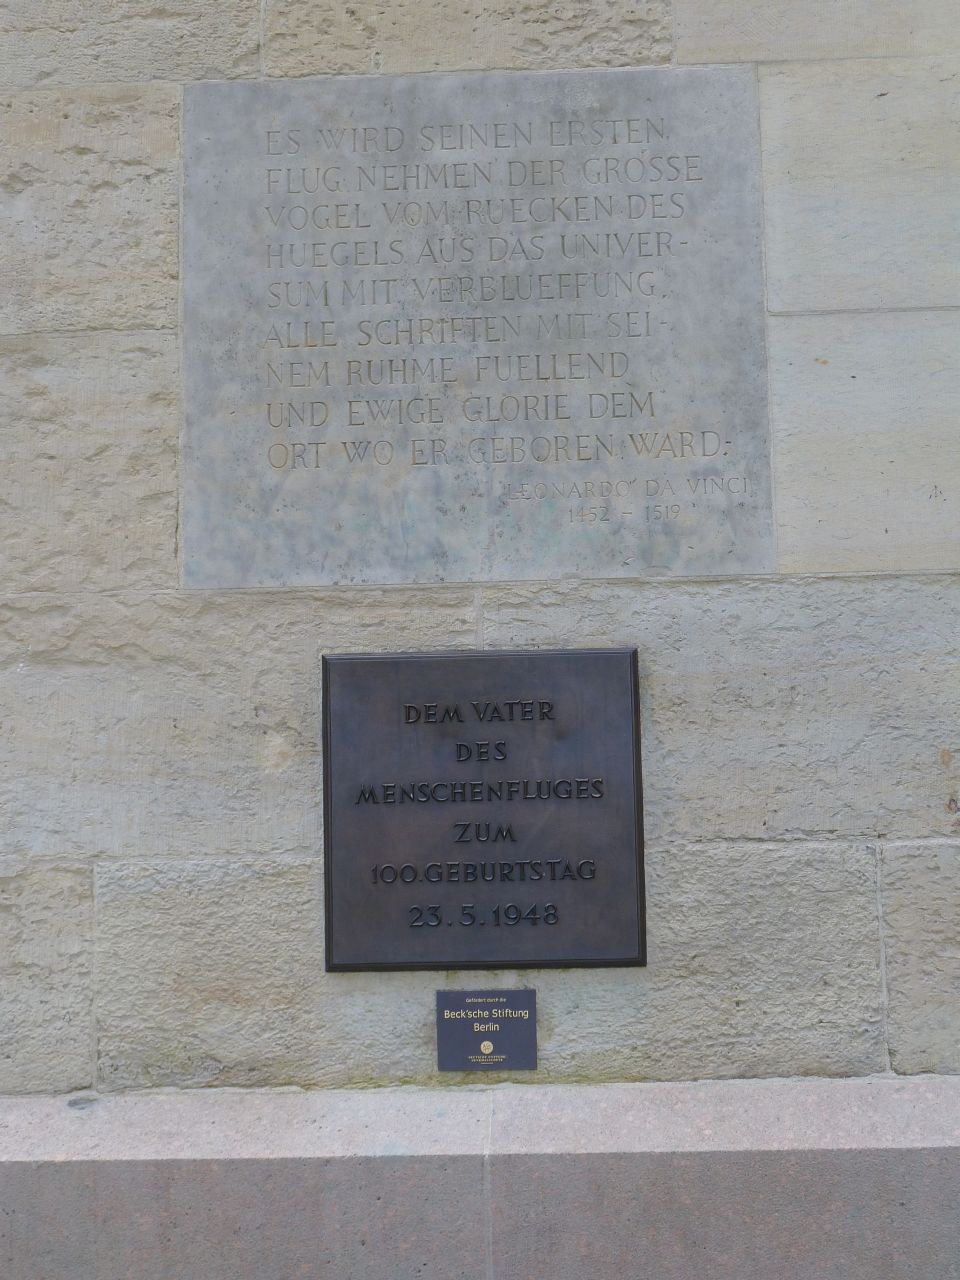 Denkmal für 'Otto Lilienthal' im Bäkepark in 'Berlin-Lichterfelde Ost'